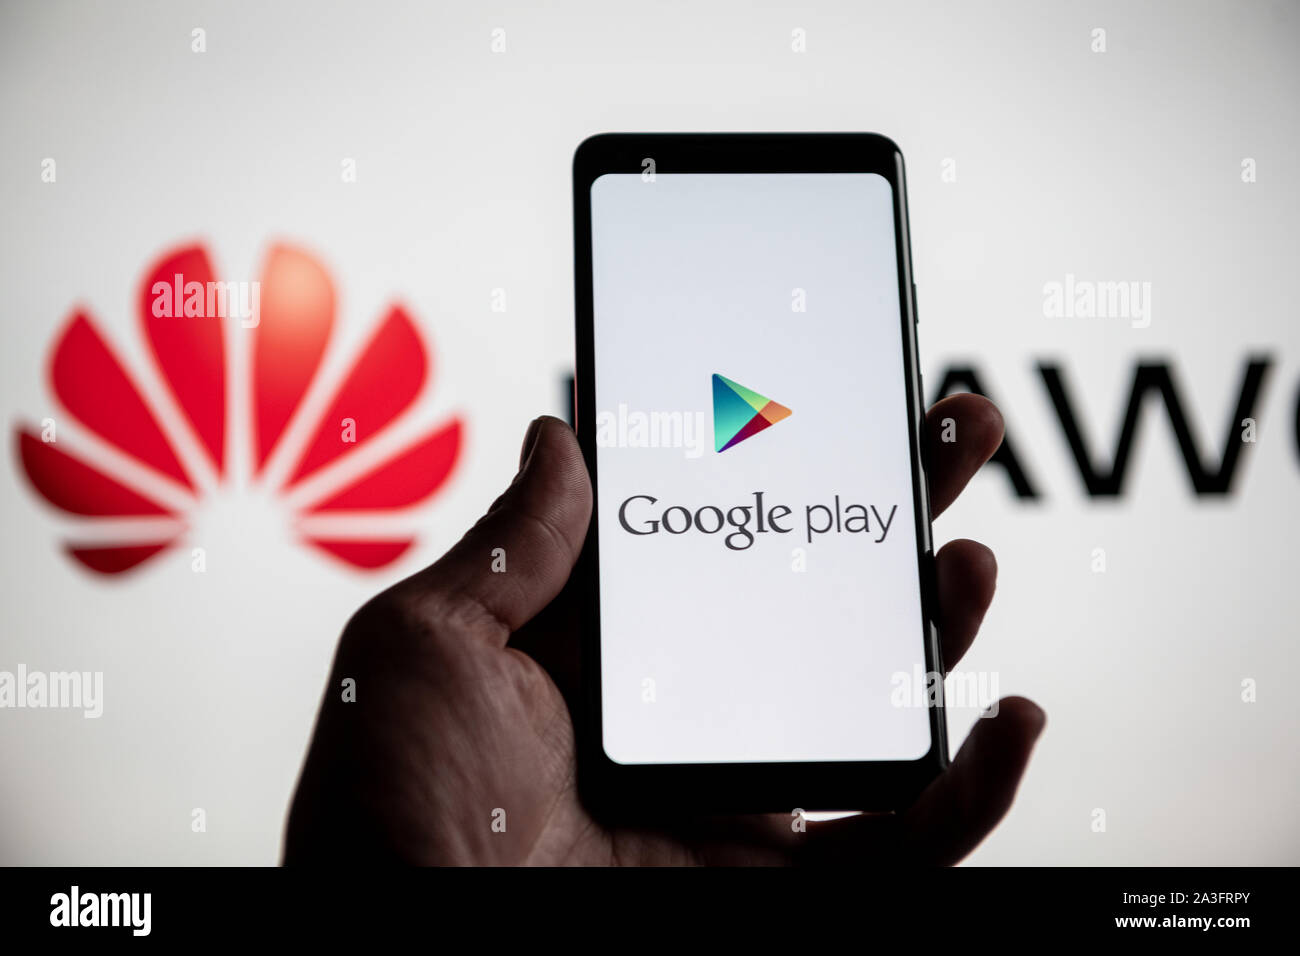 NRW/Germania - 20 Maggio 2019: un uomo detiene un Android smartphone che mostra il logo di Google play store nella parte anteriore del huawei logo. Google è res Foto Stock